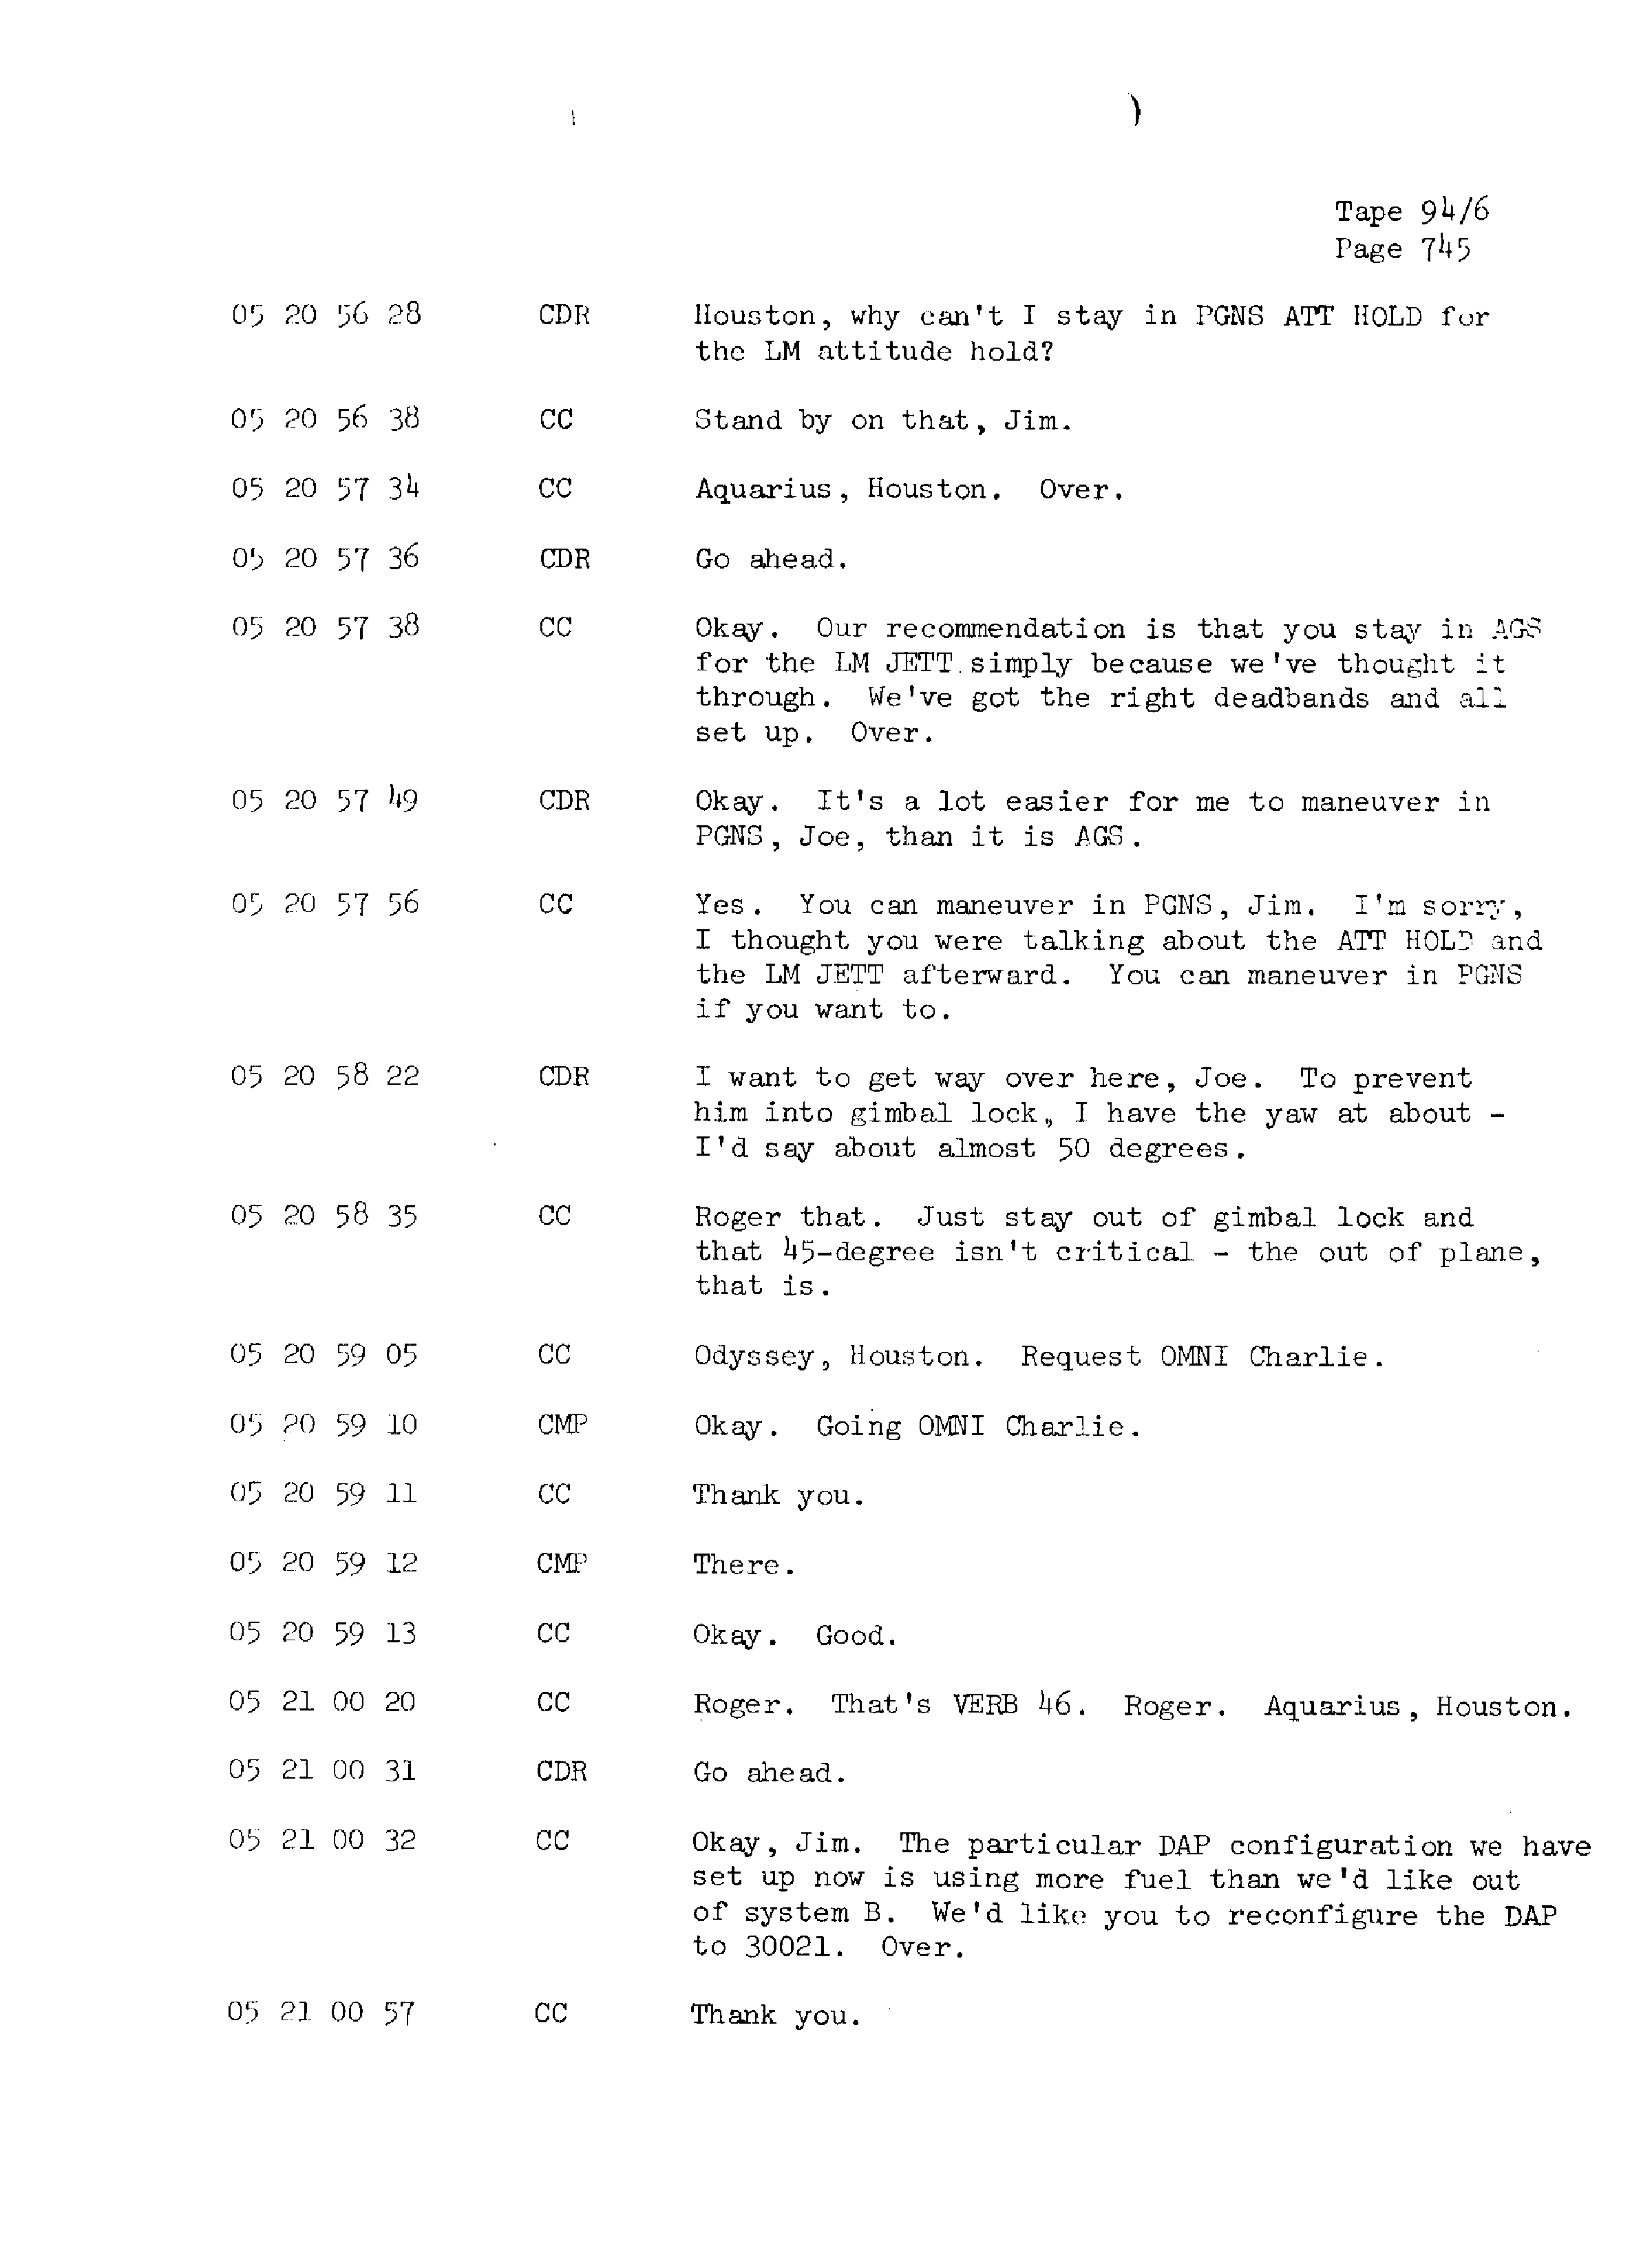 Page 752 of Apollo 13’s original transcript